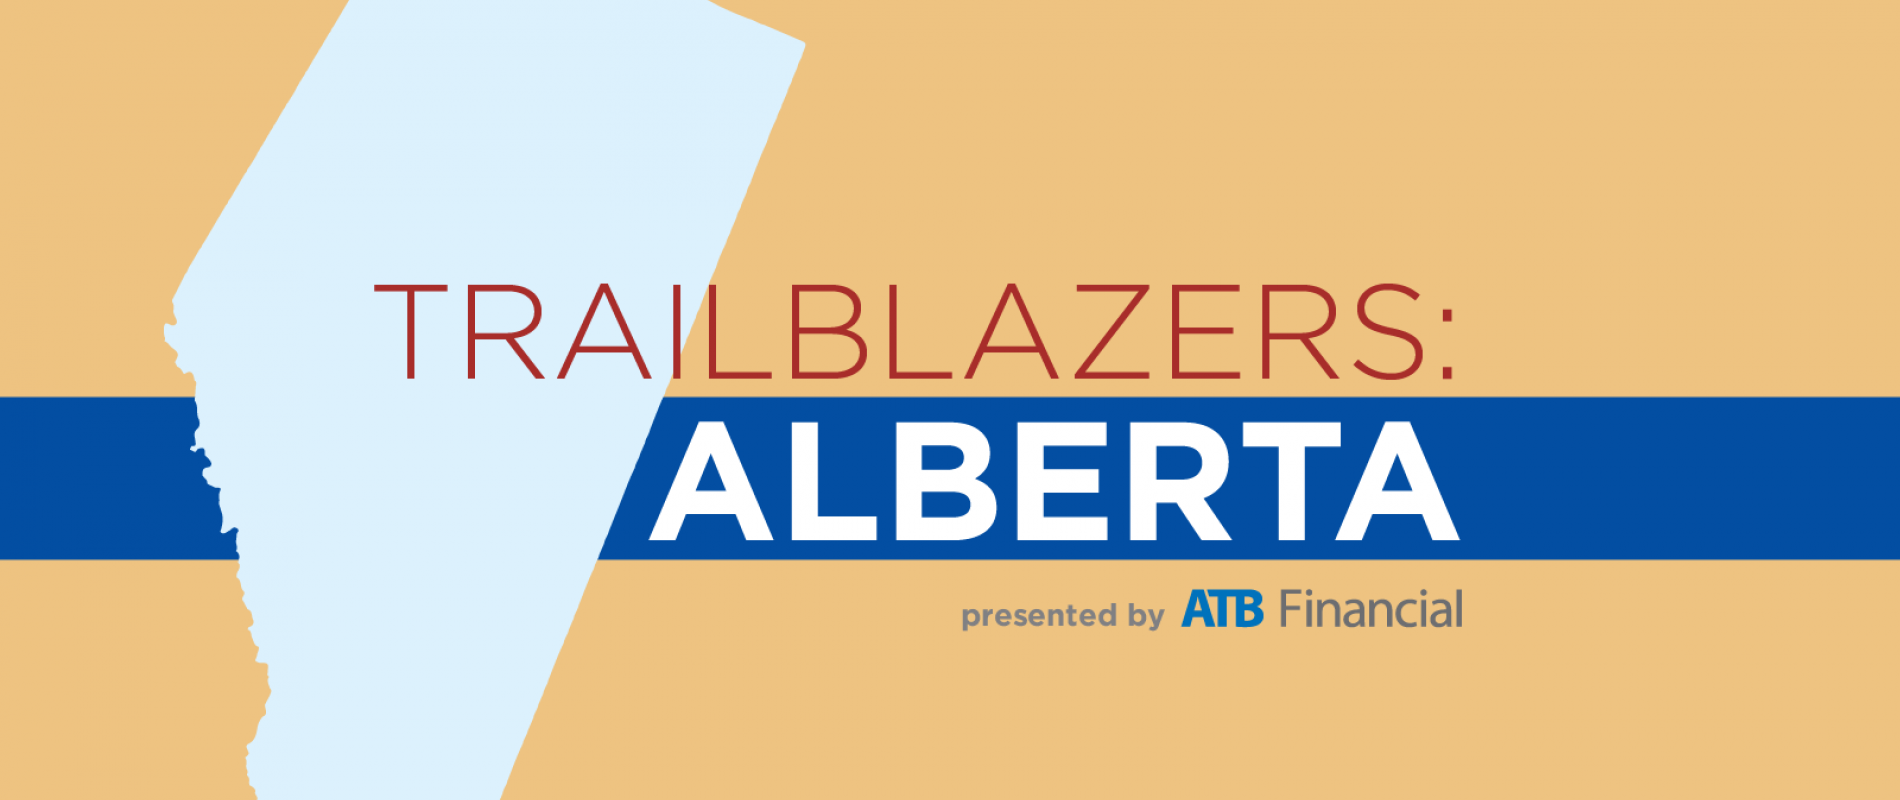 Trailblazers: Alberta